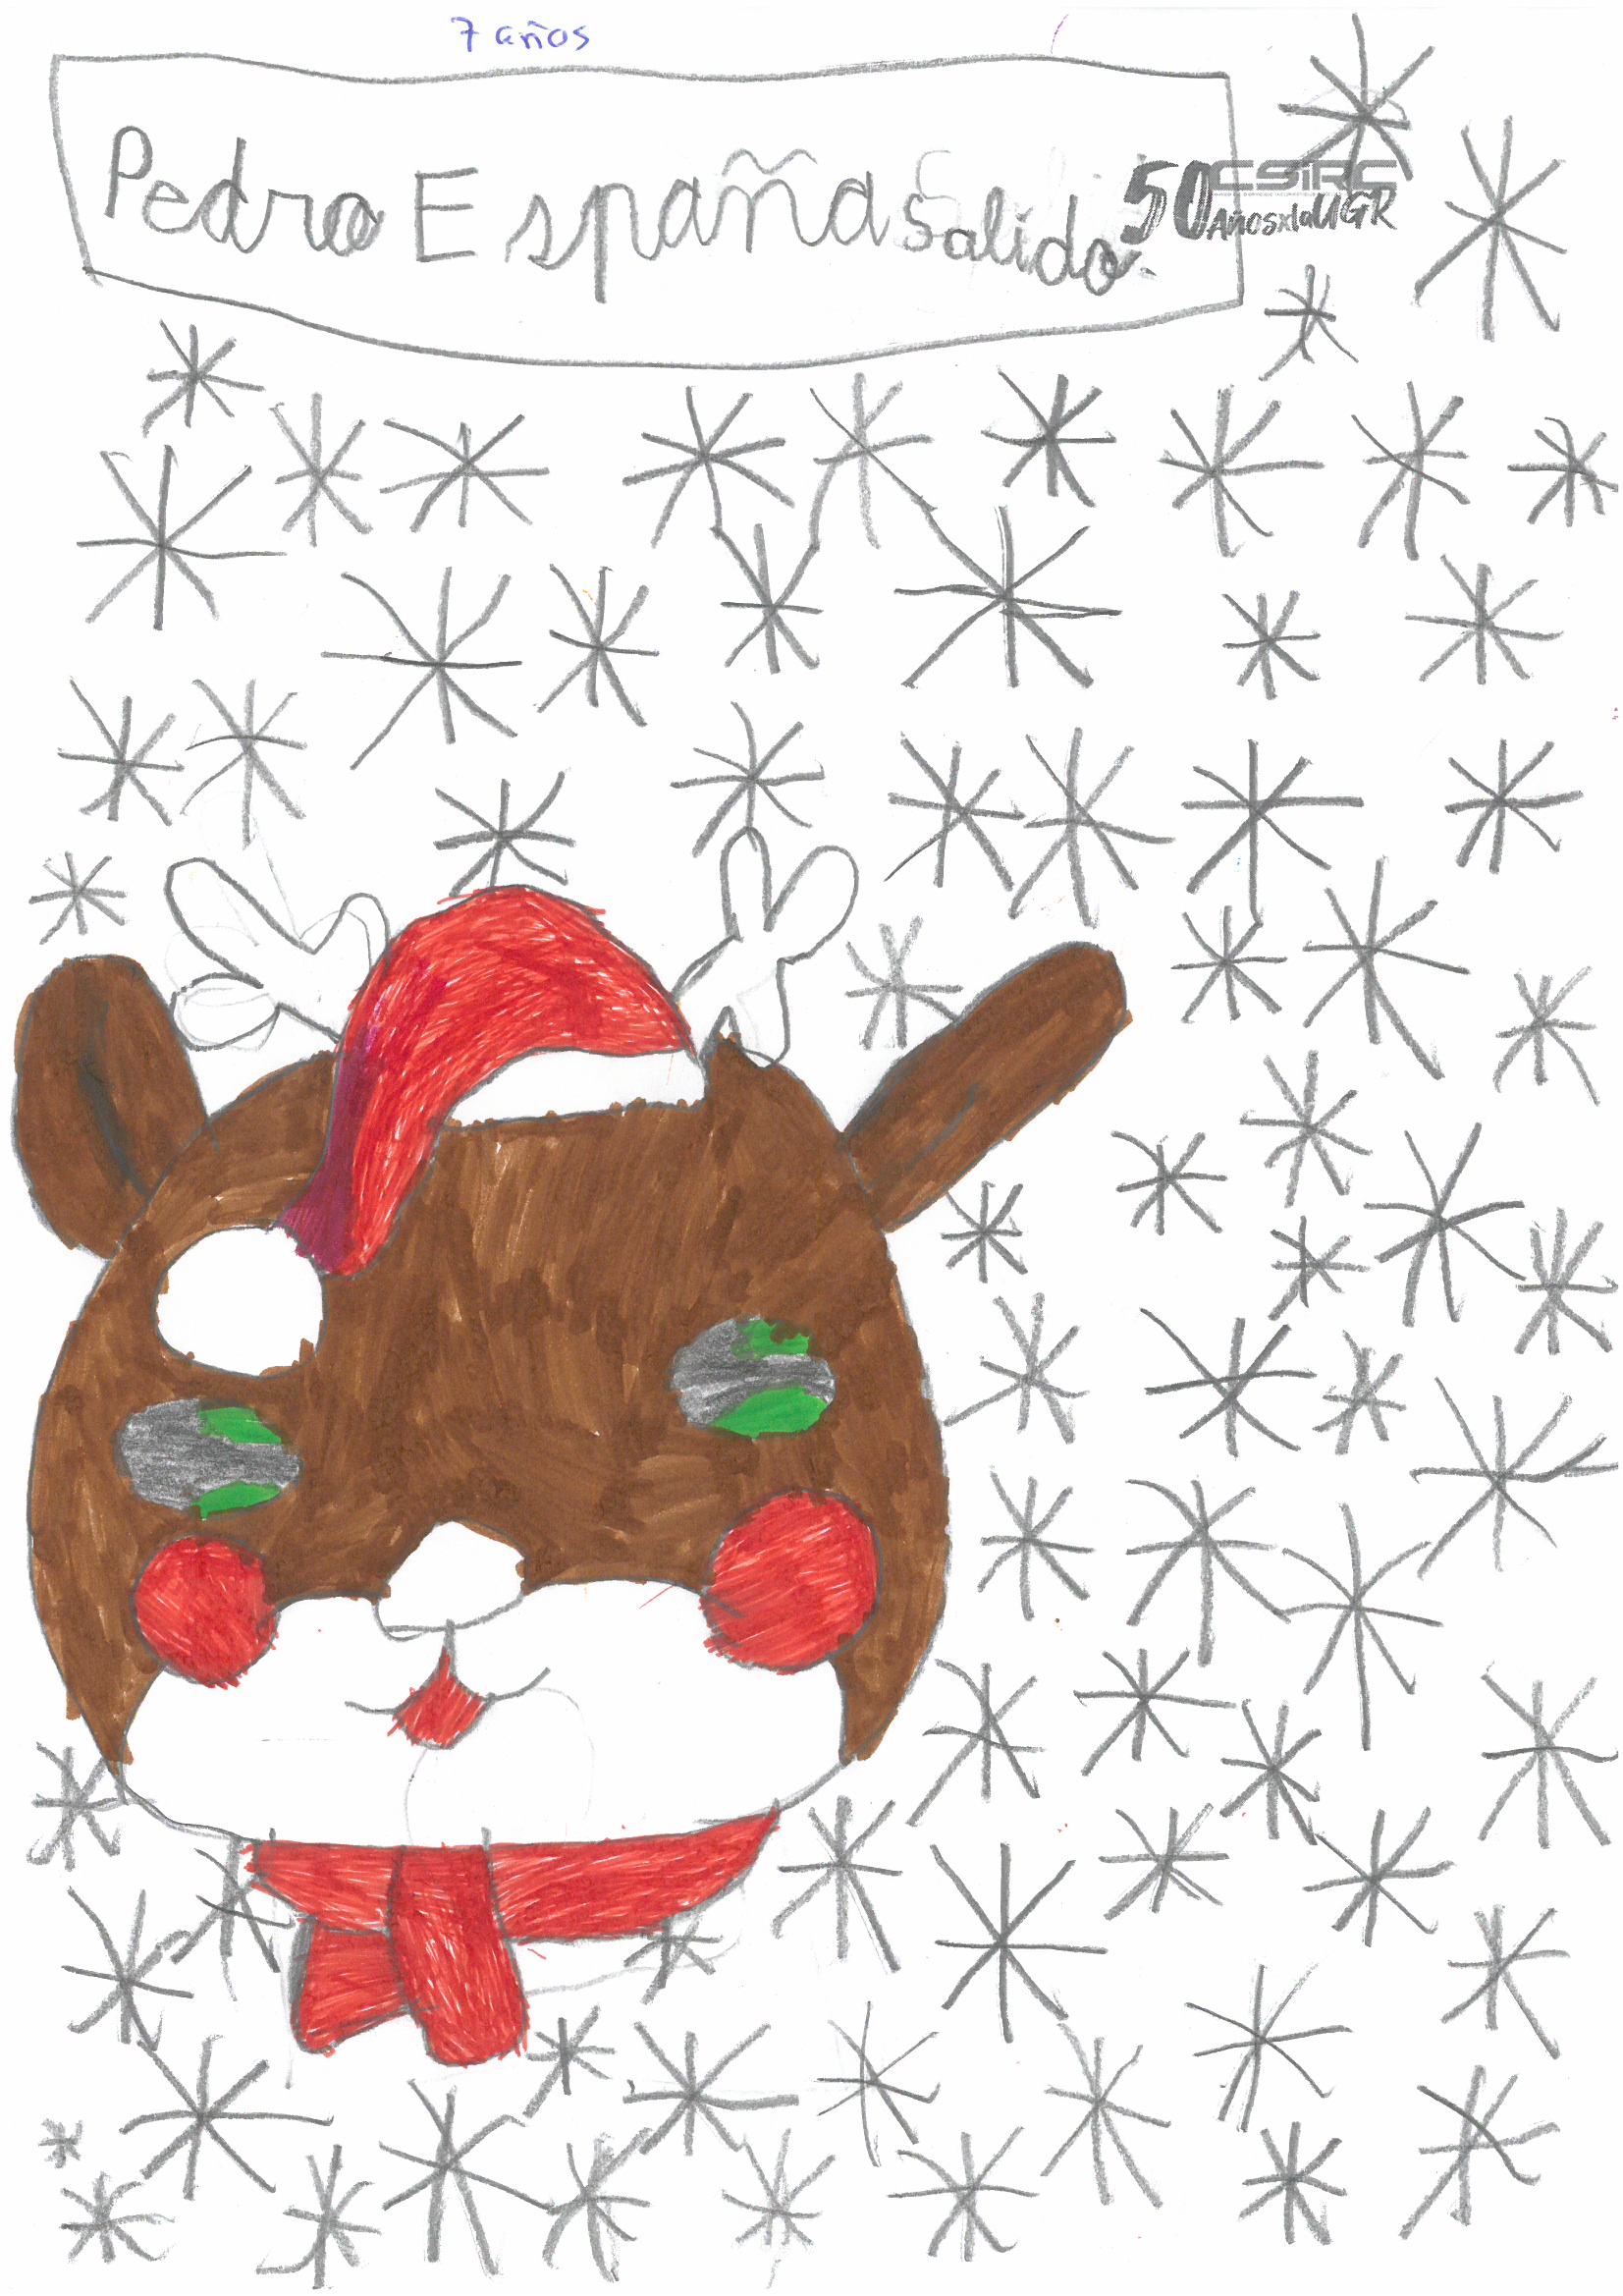 Dibujo infantil de un reno con fondo estrellado